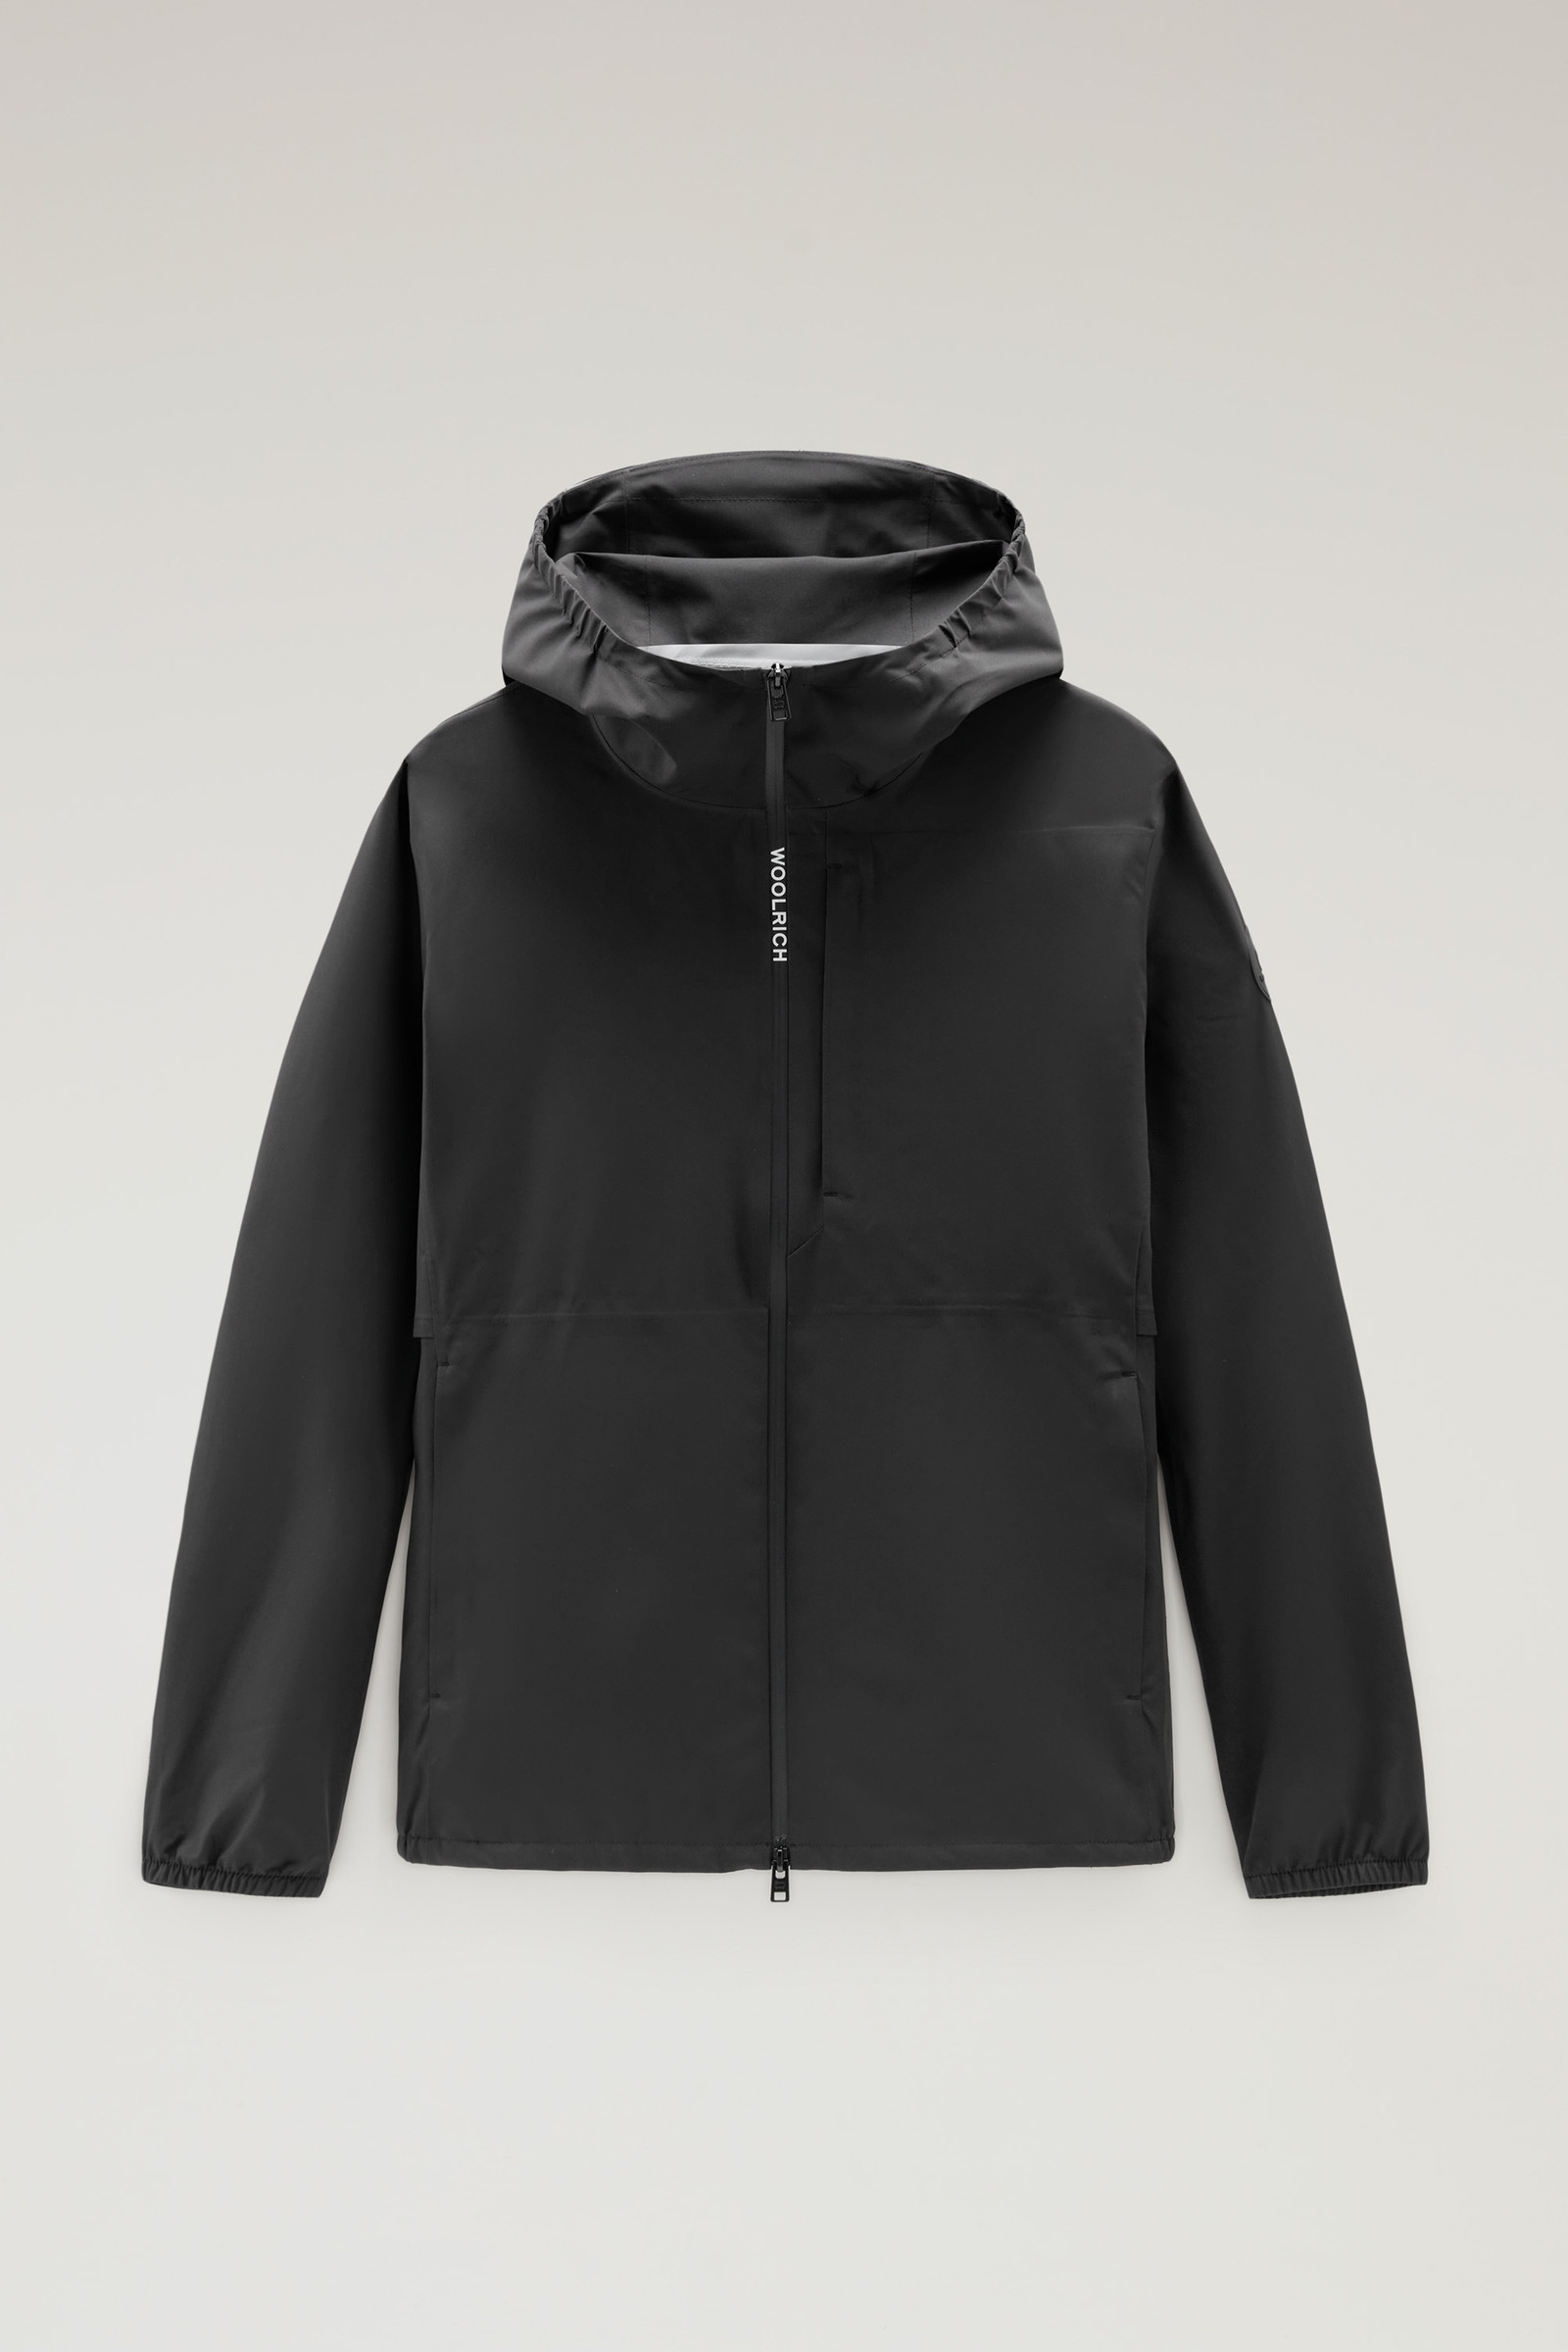 optocht buiten gebruik Plantkunde Men's Waterproof Pacific Hooded Jacket Black | Woolrich USA